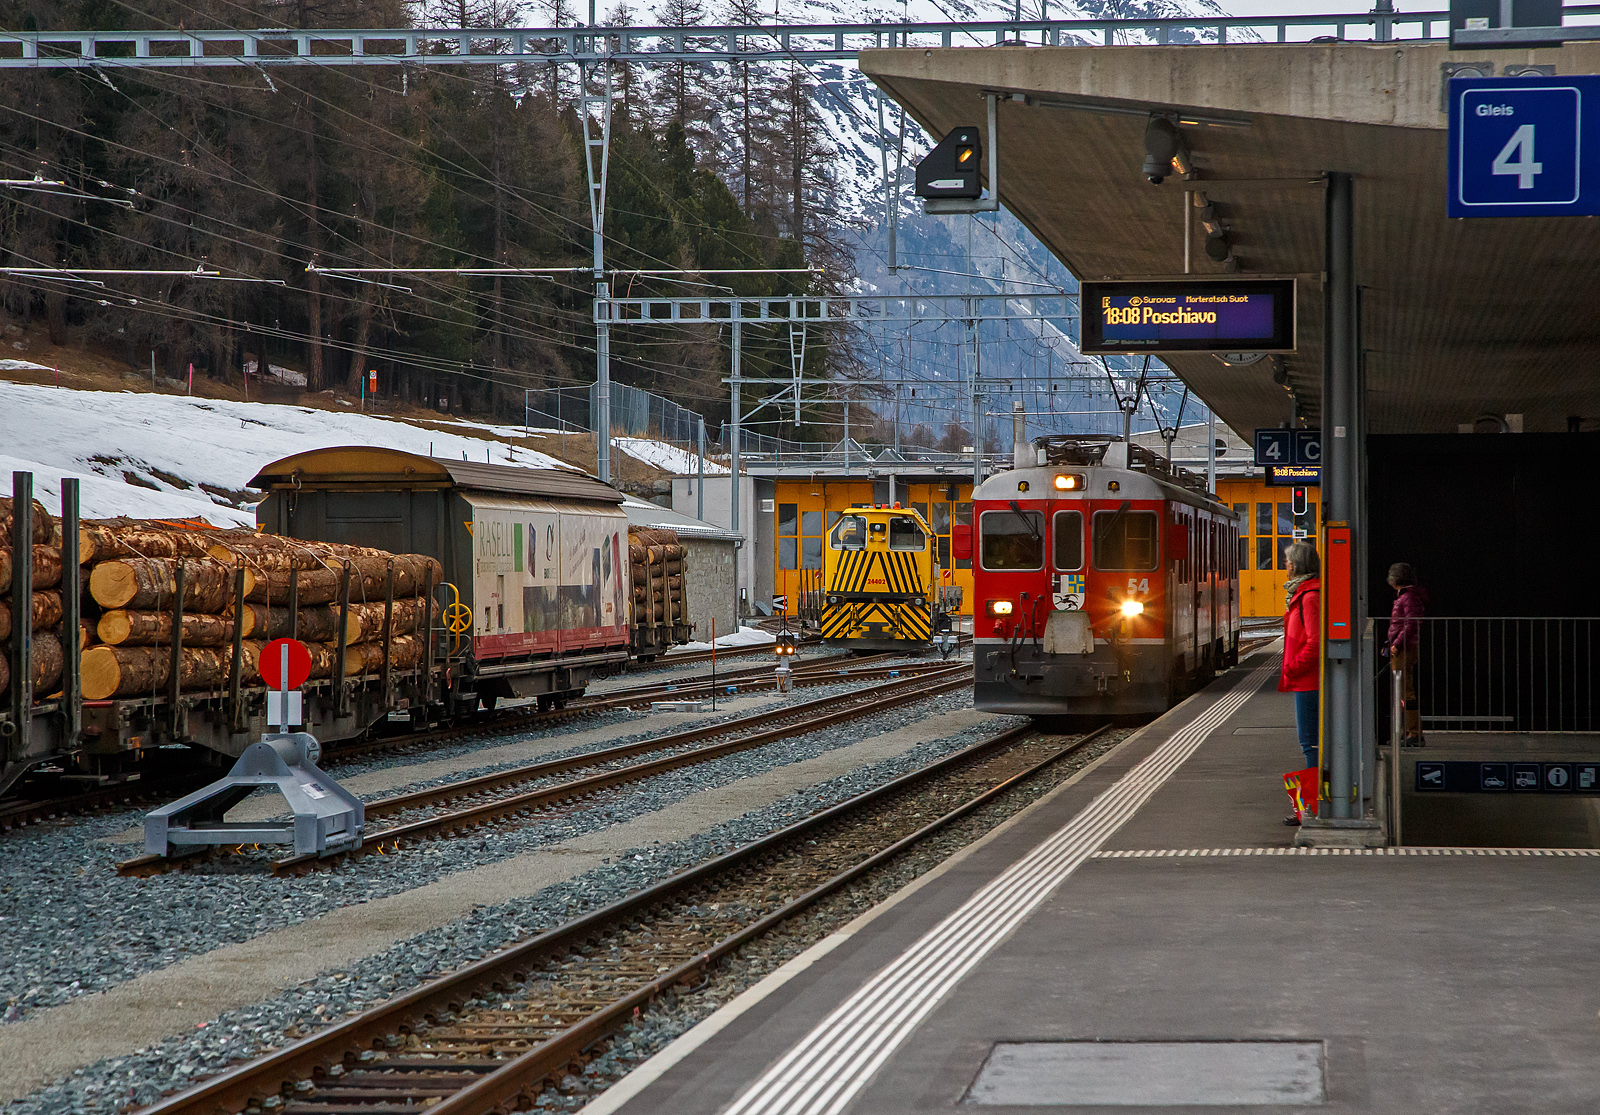 Die beiden RhB ABe 4/4 III Triebwagen 54  Hakone  und  51  Poschiavo  erreichen am 21.03.2023, als RhB-Regionalzug von St. Moritz nach Poschiavo, den Bahnhof Pontresina. Noch ist es ein reiner Personenzug, hier im Bahnhof wird er zum PmG (Personenzug mit Gterbefrderung), denn er bekommt hier 3 mit Holz beladene vierachsige Flachwagen vom Typ “Sp-w“ angehangen. Bei der Fahrt hinauf nach Ospizio Bernina merkten wir wie die Triebwagen arbeiten mussten. 

Als ABe 4/4 III werden bei der Rhtischen Bahn (RhB) die 1988 und 1990 beschafften Gleichstrom-Elektrotriebwagen mit den Betriebsnummern 51 bis 56 bezeichnet. Die Schlepptriebwagen werden nur auf der Berninabahn eingesetzt, wo sie die Verkehrszunahme bewltigen helfen. 

Die von SWA (Schindler Waggon AG in Altenrhein) und BBC (Brown, Boveri & Cie. in Baden) in zwei Serien (1988 und 1990)zu je drei Stck gebauten und gelieferten Triebwagen waren seinerzeit die ersten RhB-Triebfahrzeuge in Umrichtertechnik mit Drehstrom-Asynchronmotoren. Zudem gehrten sie weltweit zu den ersten Gleichstromtriebfahrzeugen mit GTO-Thyristoren. Sie sind 65 km/h schnell, 47 Tonnen schwer und waren mit einer Stundenleistung von 1.016 kW bei Ablieferung die strksten Gleichstromtriebwagen der RhB. Ihre Anhngelast bei 70 Promille Steigung betrgt 90 beziehungsweise 95 Tonnen, sofern nur Vierachser im Zug sind. Sie weisen zwlf Sitzpltze in der ersten und 16 in der zweiten Klasse auf. Dank Vielfachsteuerung knnen sie untereinander und auch mit den lteren ABe 4/4 II 41–49 sowie Gem 4/4 801–802 in Doppeltraktion fahren, wovon im tglichen Betrieb reger Gebrauch gemacht wird. Eine Doppeltraktion von zwei ABe 4/4 III hat theoretisch eine Leistungsreserve fr die Befrderung von weiteren 50 Tonnen, da die maximale Zughakenlast von 140 Tonnen auf der Berninabahn nicht berschritten werden darf.

TECHNISCHE DATEN:
Gebaute Anzahl: 6 (Nummerierung 51 – 56)
Hersteller: SWA / BBC
Baujahre: 1988 und 1990
Achsformel: Bo′Bo′
Spurweite: 1.000 mm
Lnge ber Puffer: 16.886 mm
Radstand : 13.010 mm
Breite: 2.650 mm
Dienstgewicht: 47 t 
Hchstgeschwindigkeit: 65 km/h
Dauerleistung: 1.016  kW
Anfahrzugkraft: 178 kN
Stundenzugkraft: 108 kN bei 34 km/h
Stromsystem: 1 kV DC (Gleichstrom)
Strombertragung: 2 Einholmstromabnehmer
Steuerung:  GTO-Thyristor
Sitzpltze: 1. Klasse: 12 / 2. Klasse: 16
